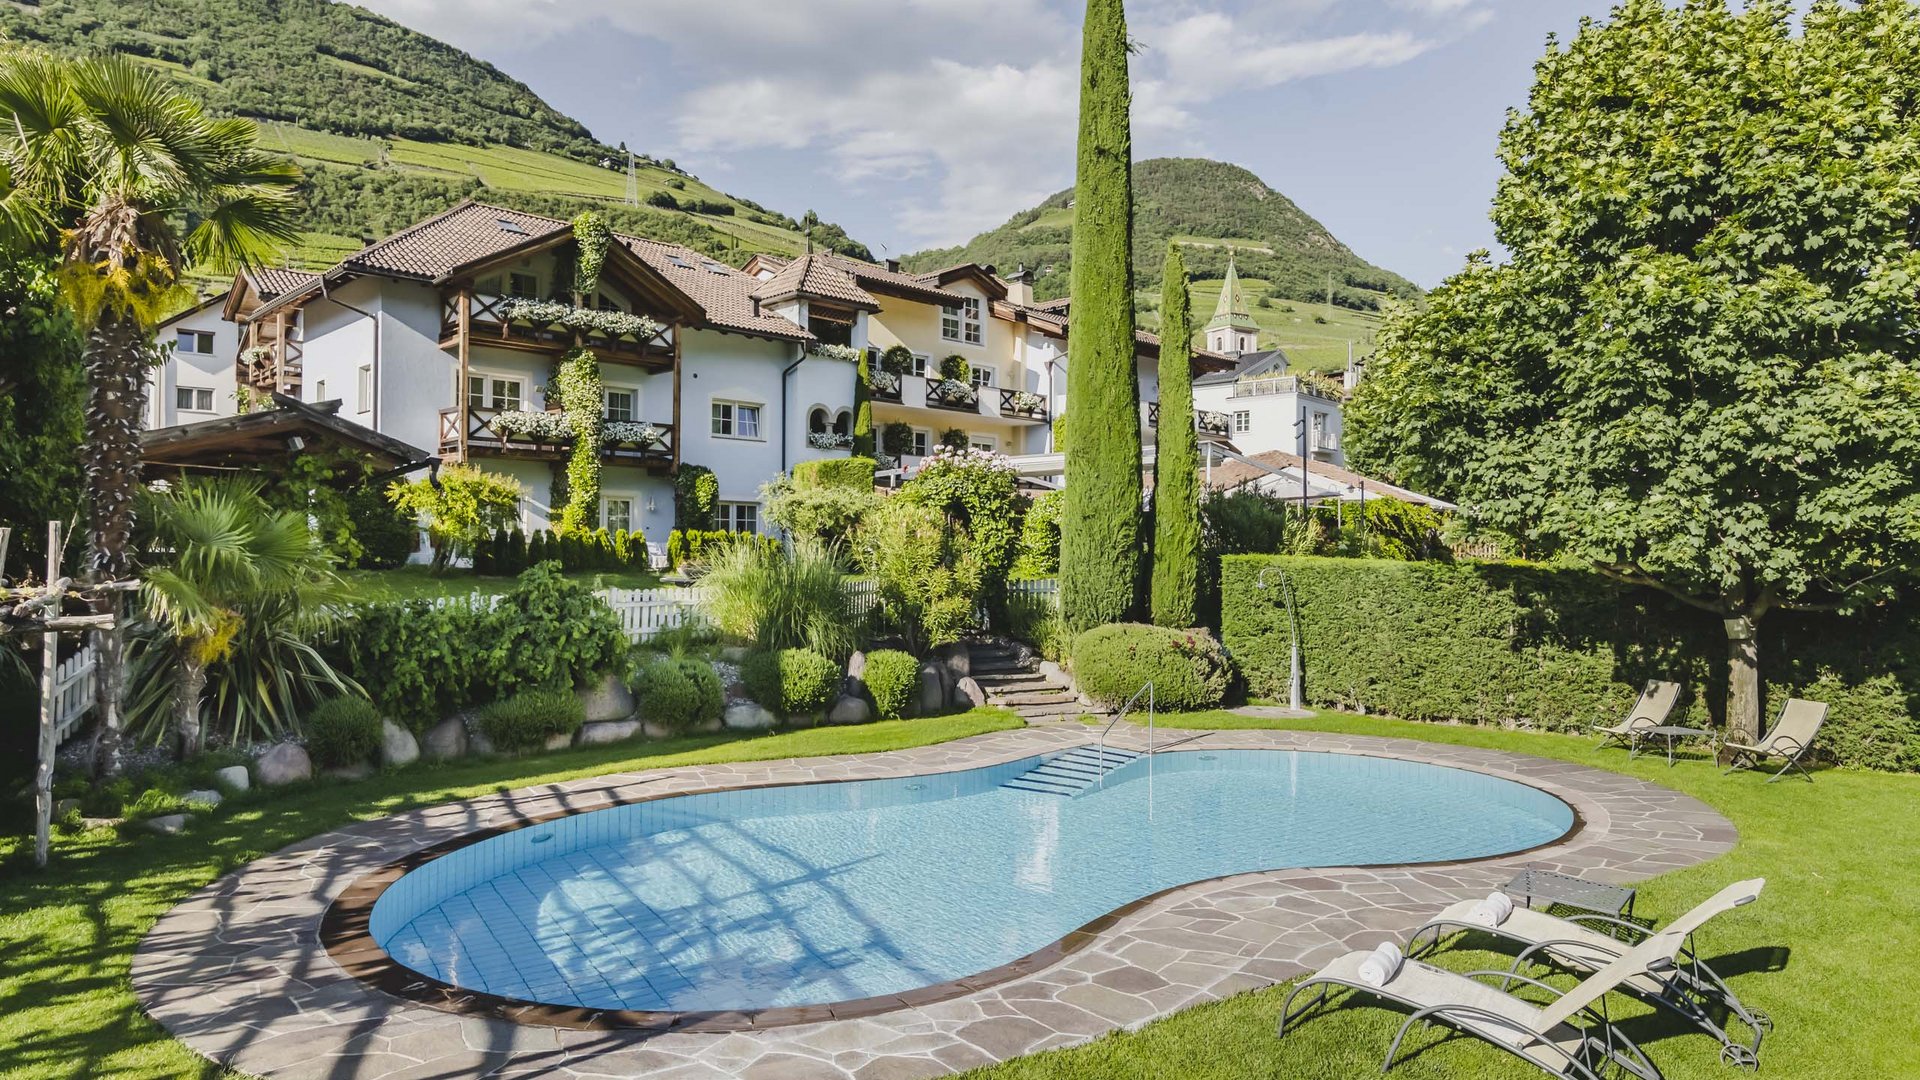 Un hotel vicino Bolzano con piscina? Eccolo!